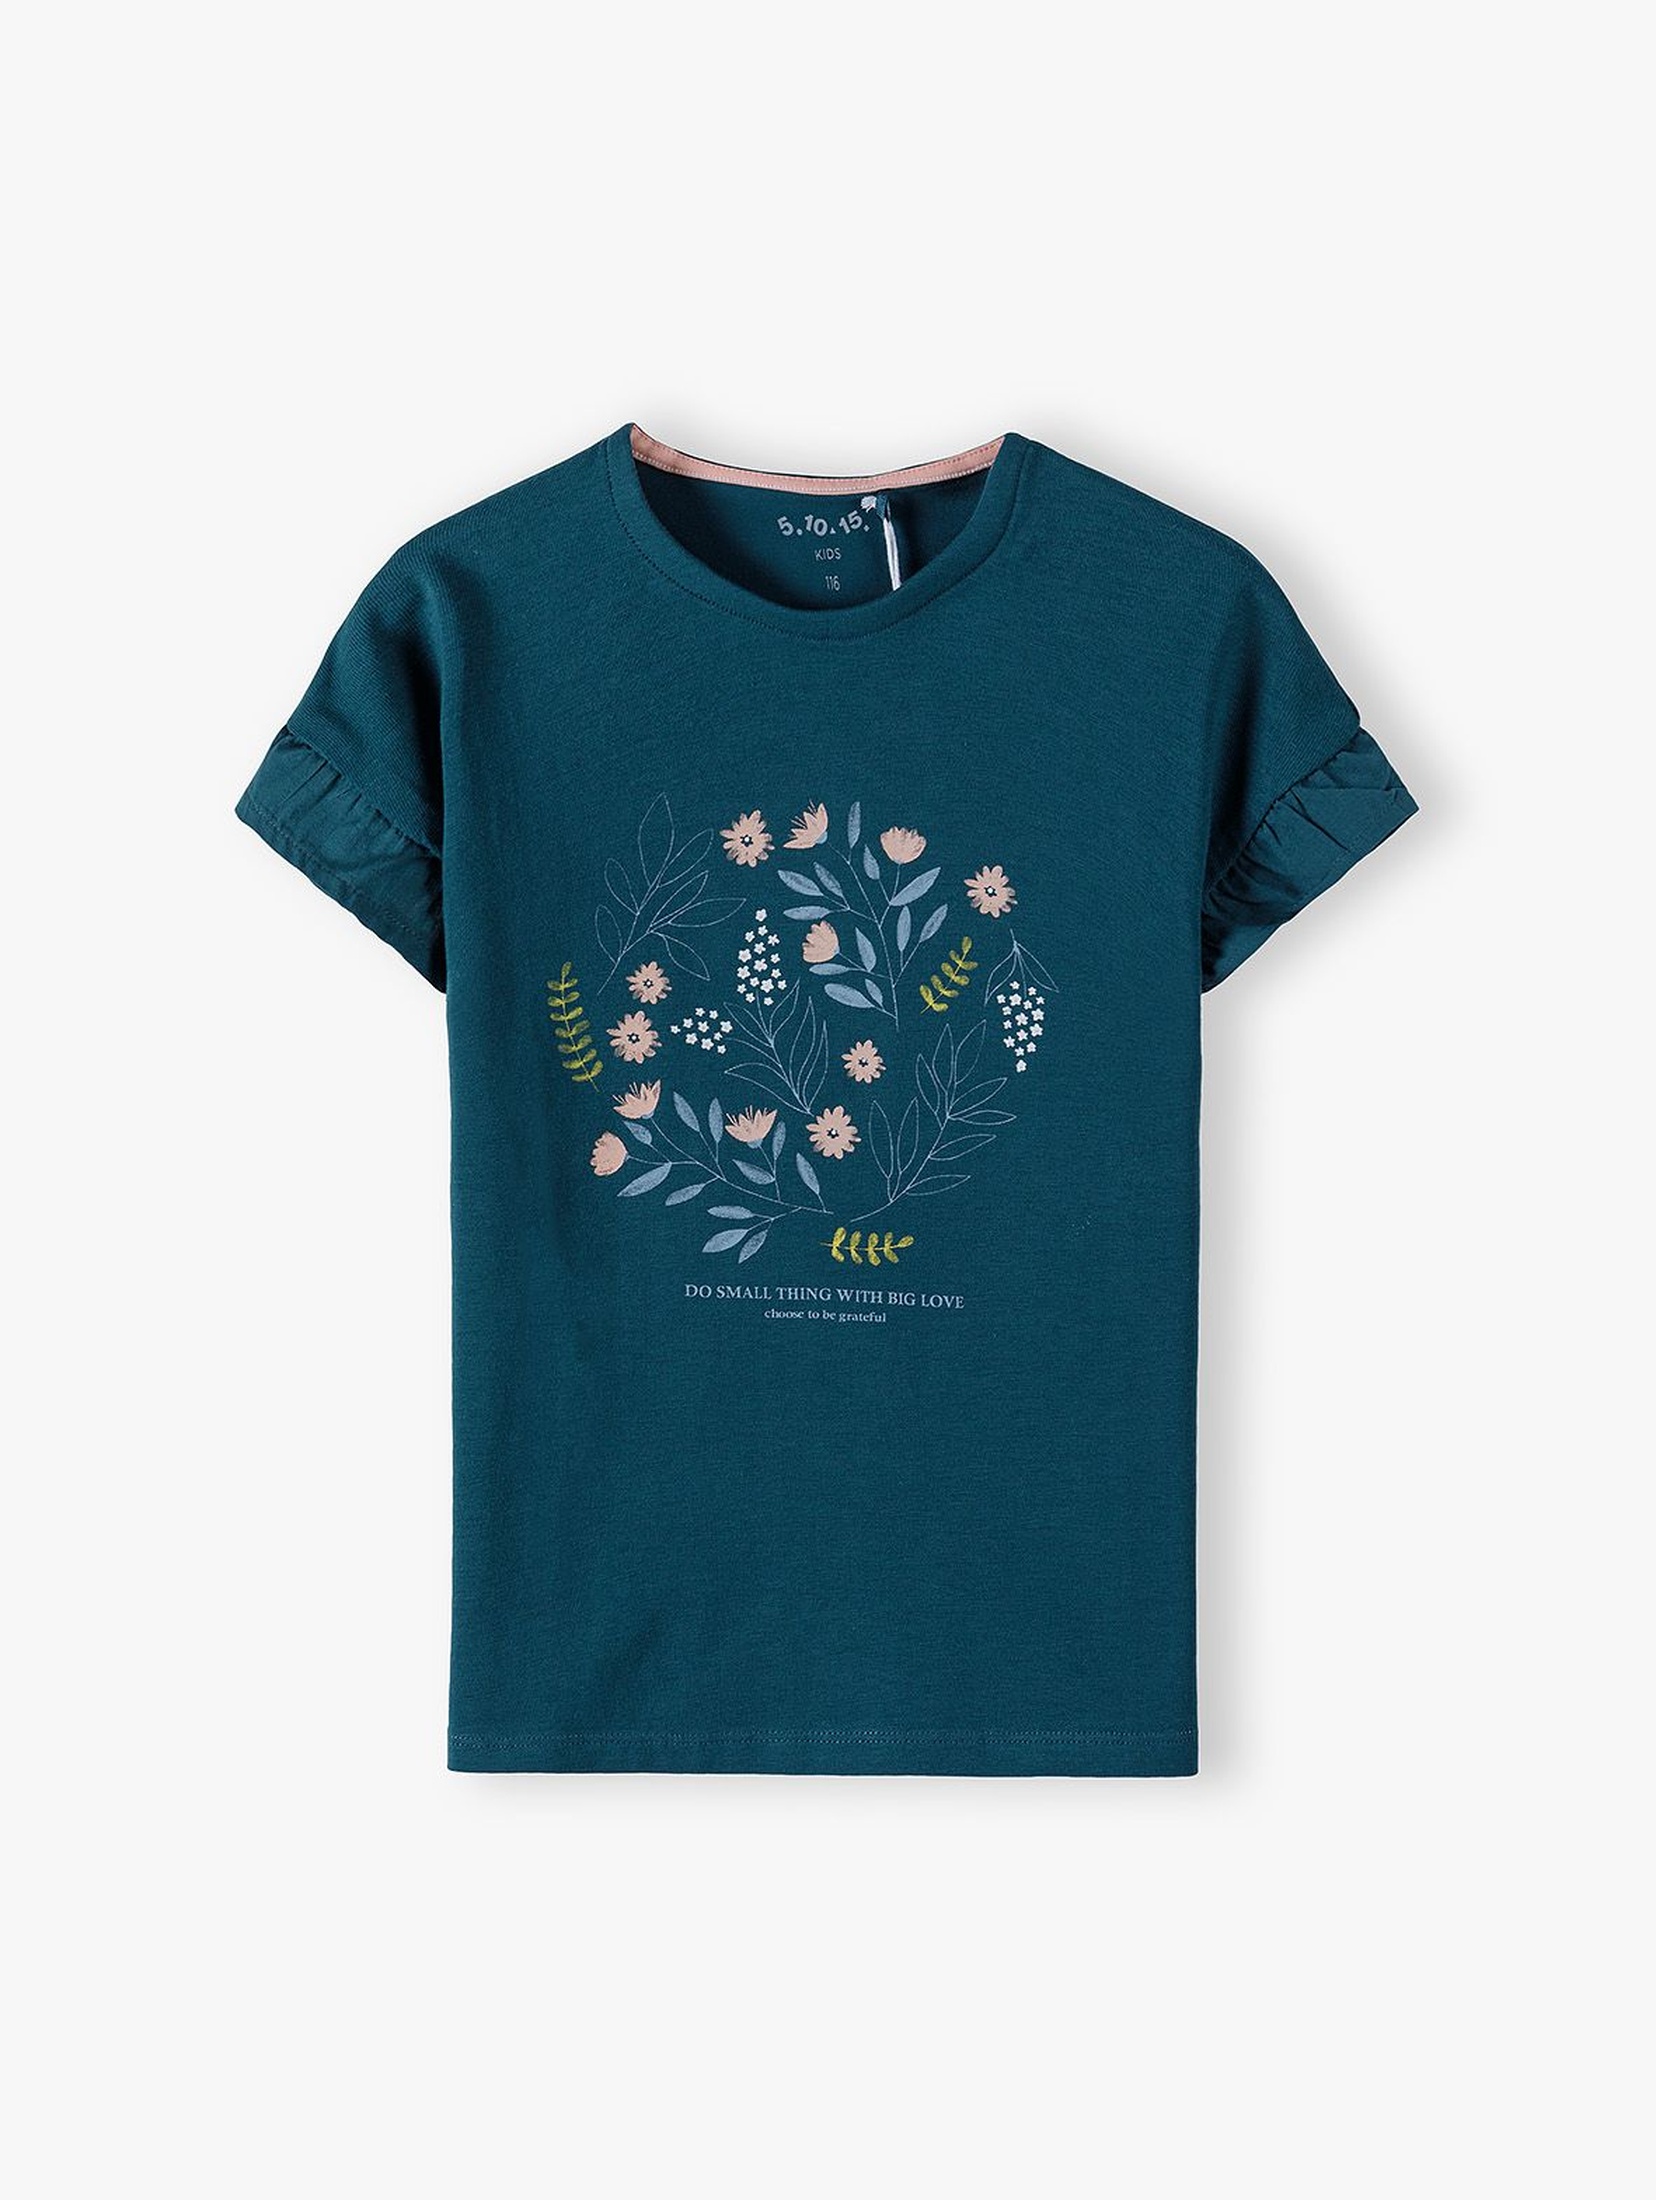 Bawełniany granatowy  t-shirt dziewczęcy ozdobiony kwiatkami